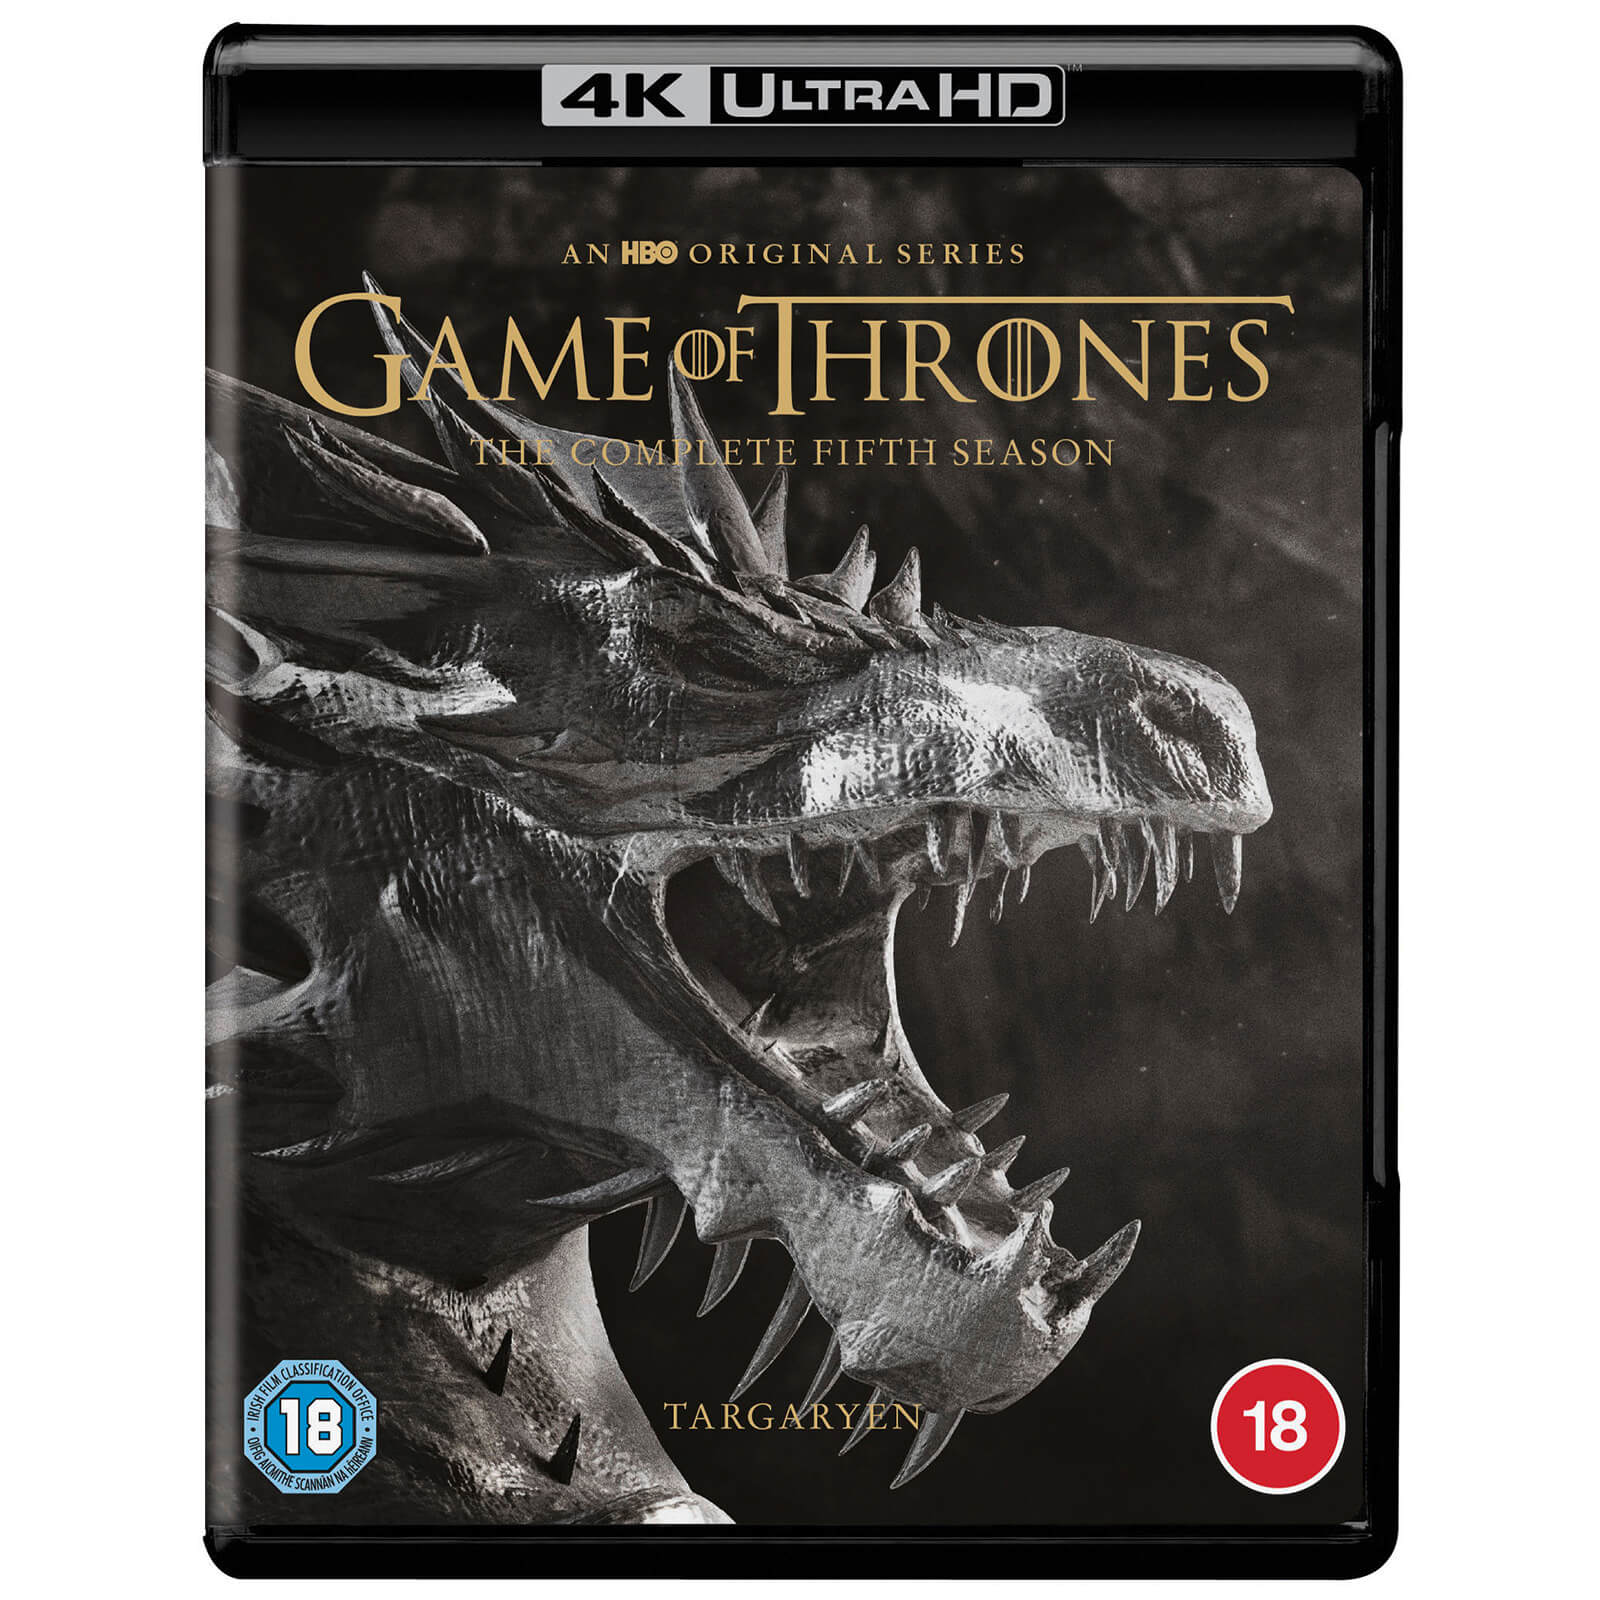 Bild von Game of Thrones: Staffel 5 - 4K Ultra HD